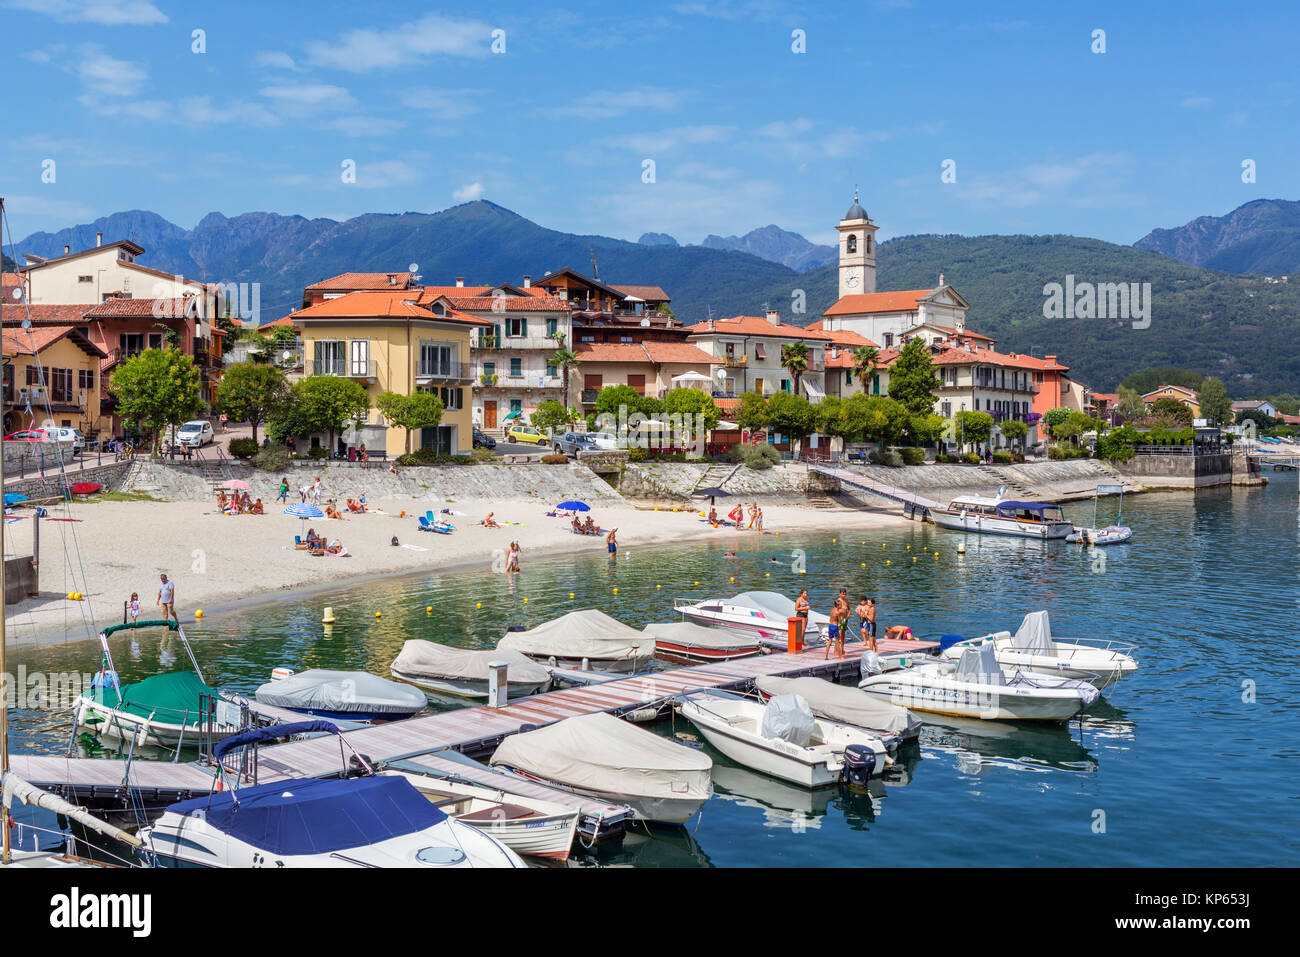 Beach in Feriolo, Lake Maggiore, Italian Lakes, Piedmont, Italy Stock Photo